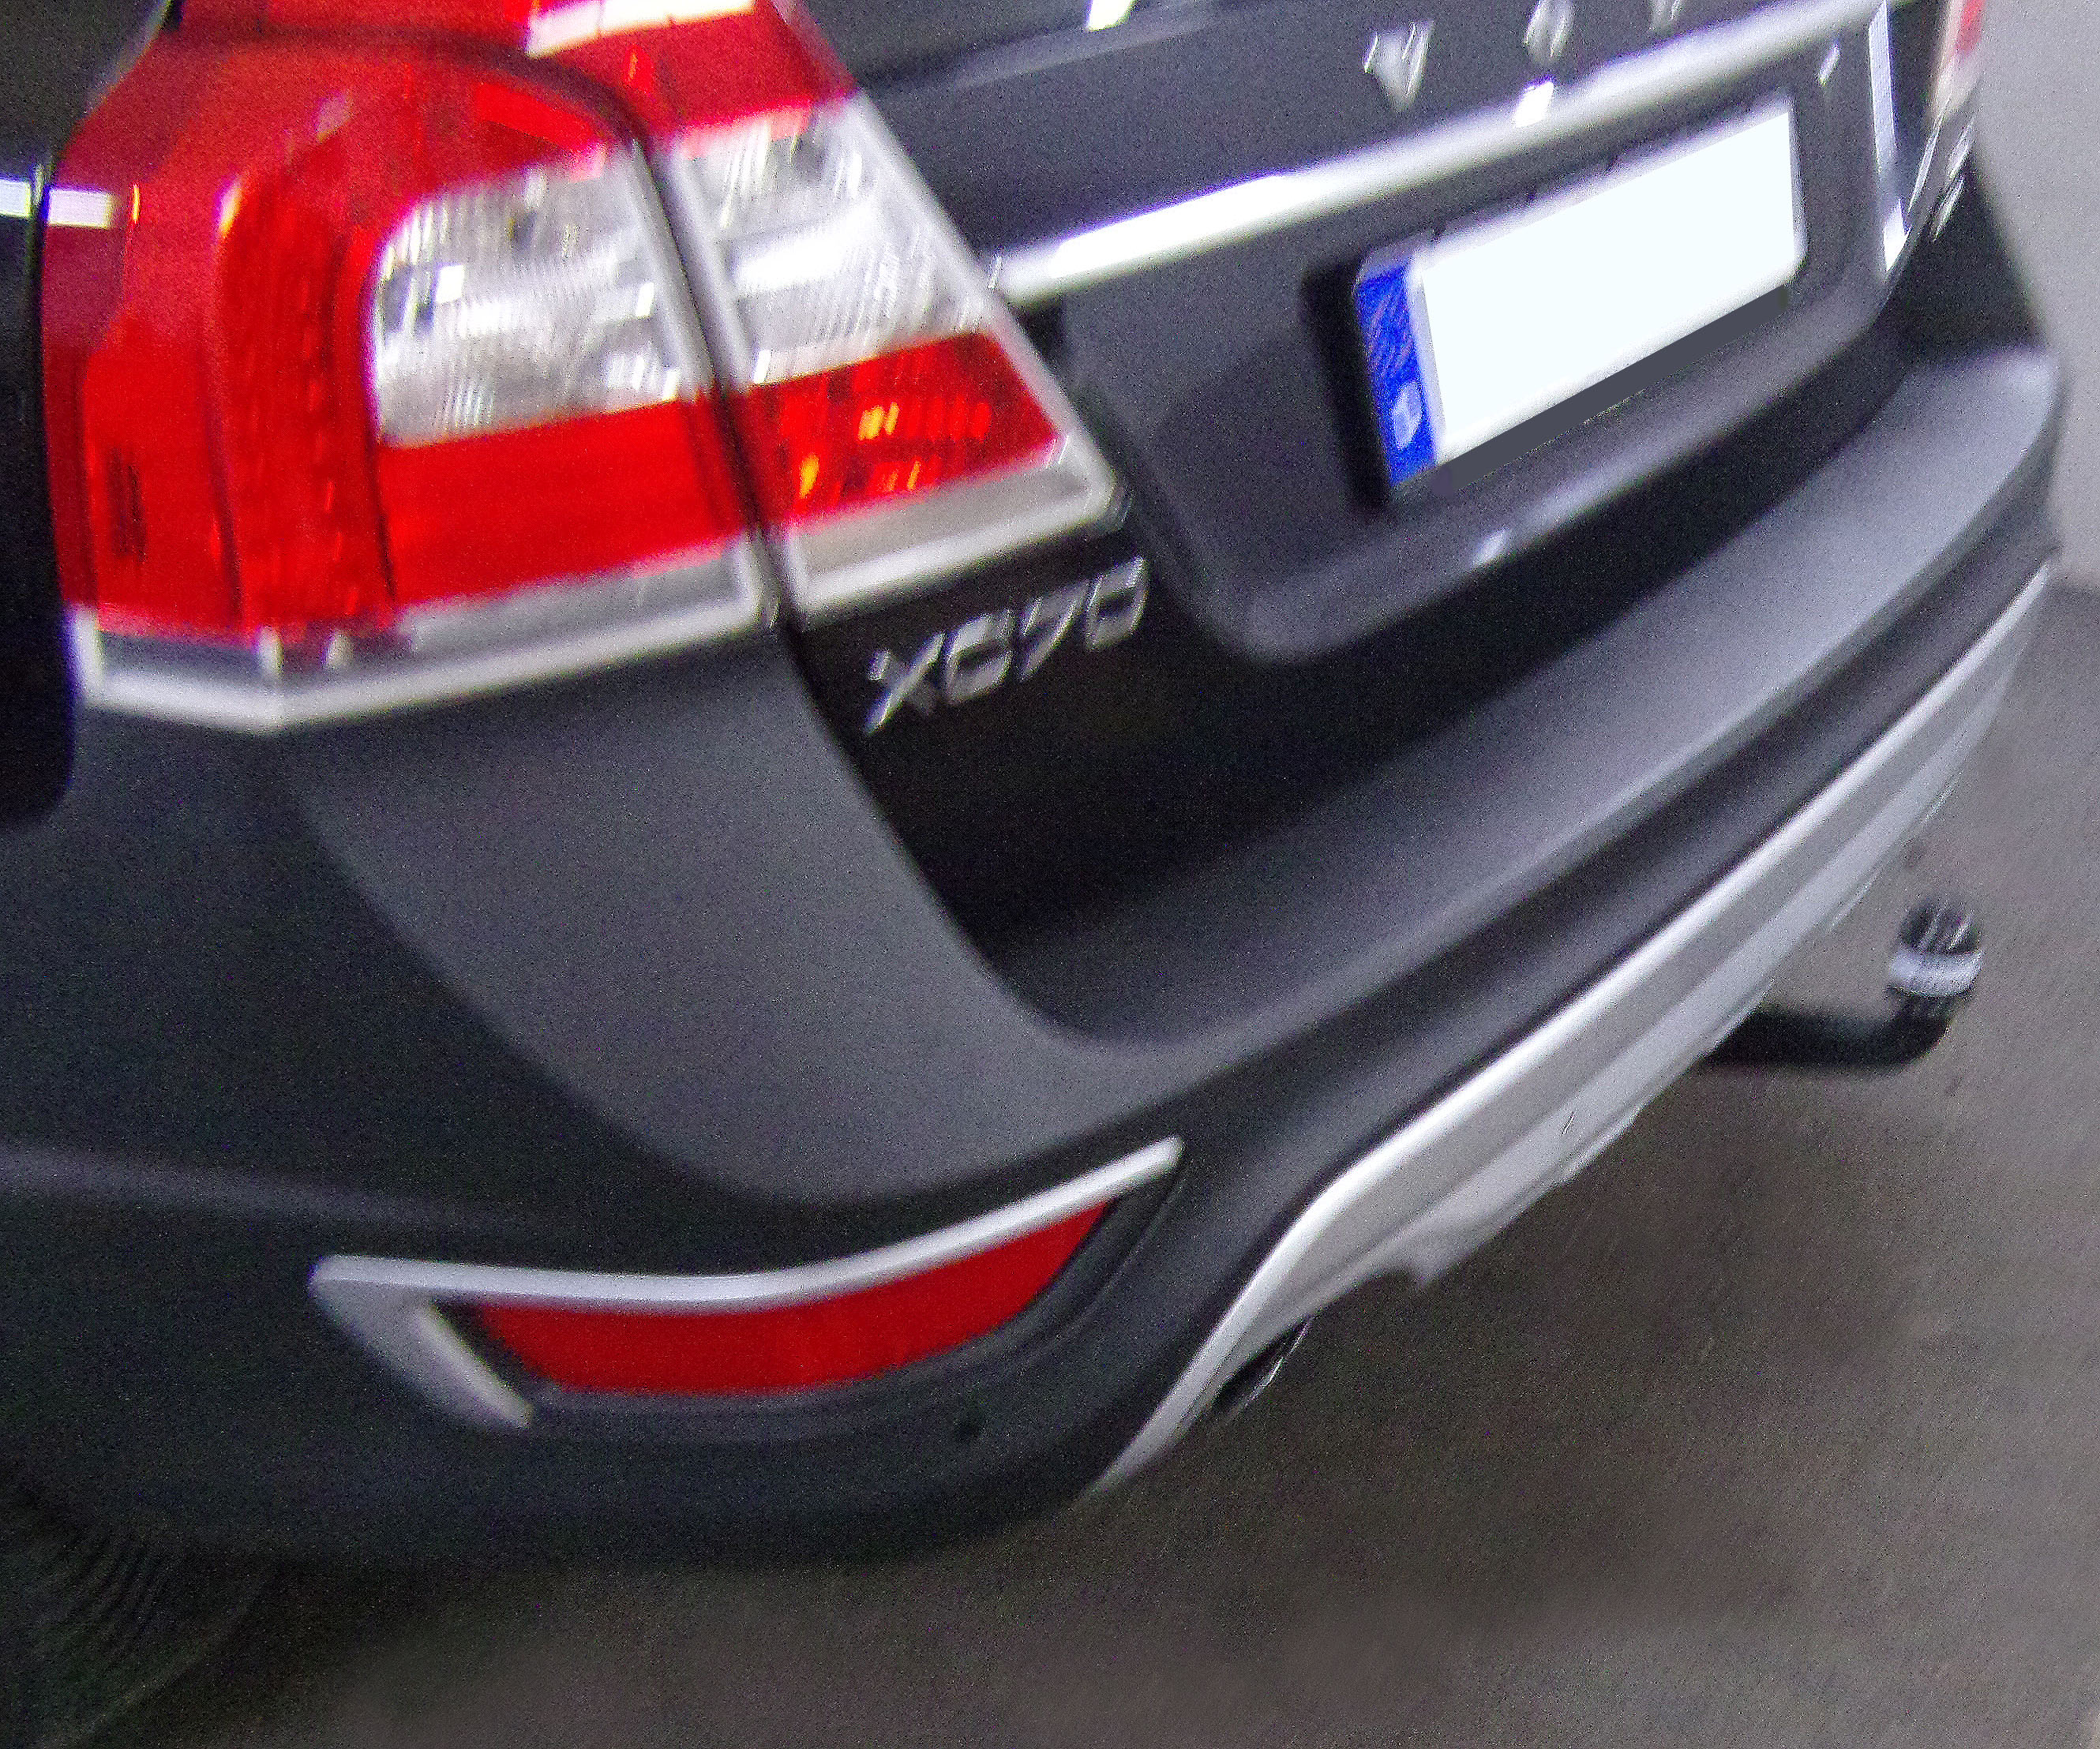 Anhängerkupplung für Volvo-XC 70 Cross Country, ohne Niveauregulierung, Baureihe 2007-2016 V-abnehmbar